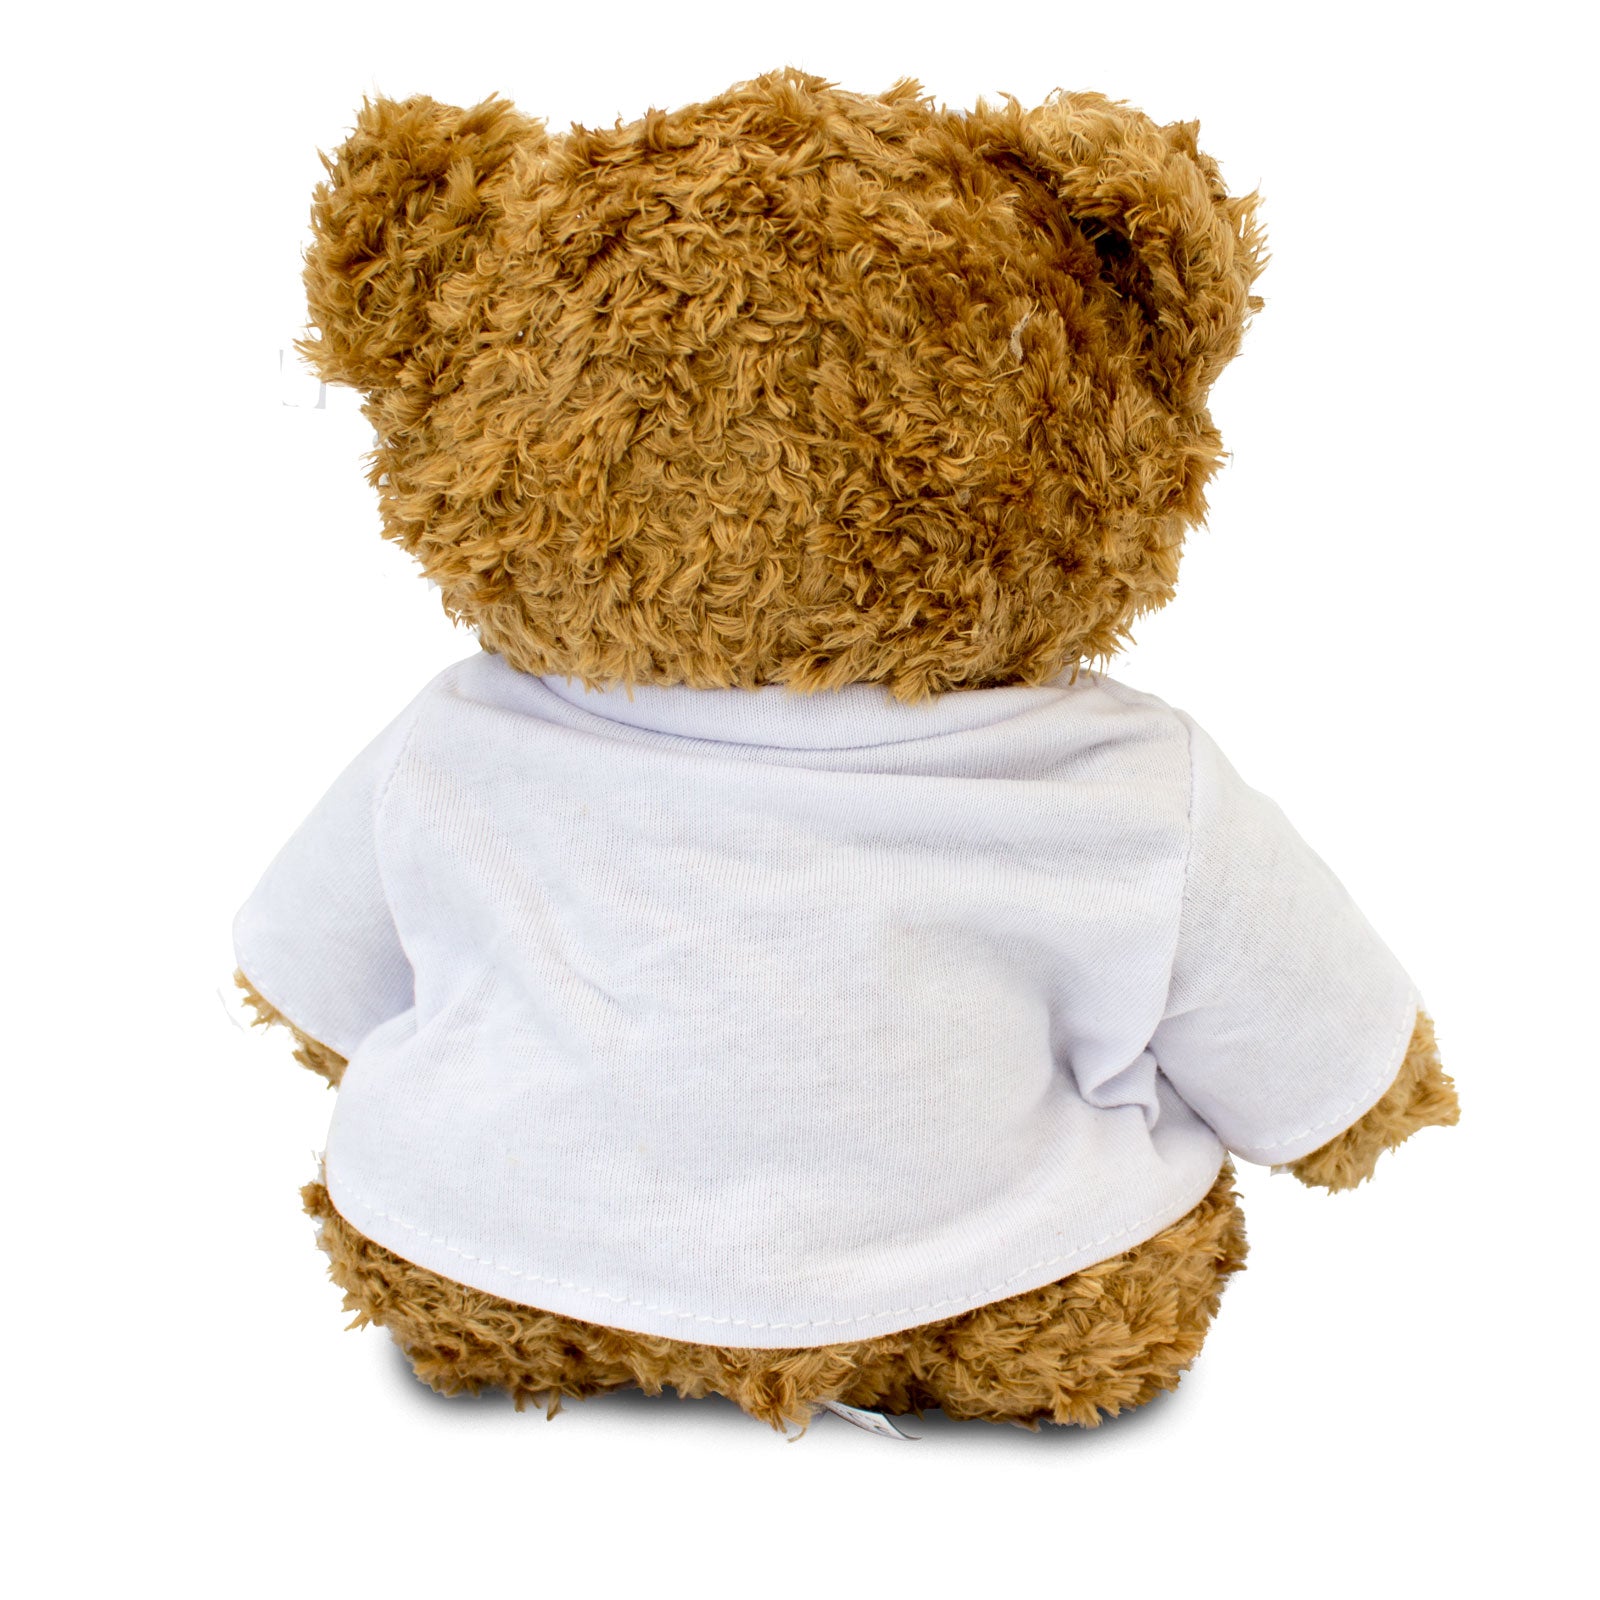 I Love Hannah - Teddy Bear